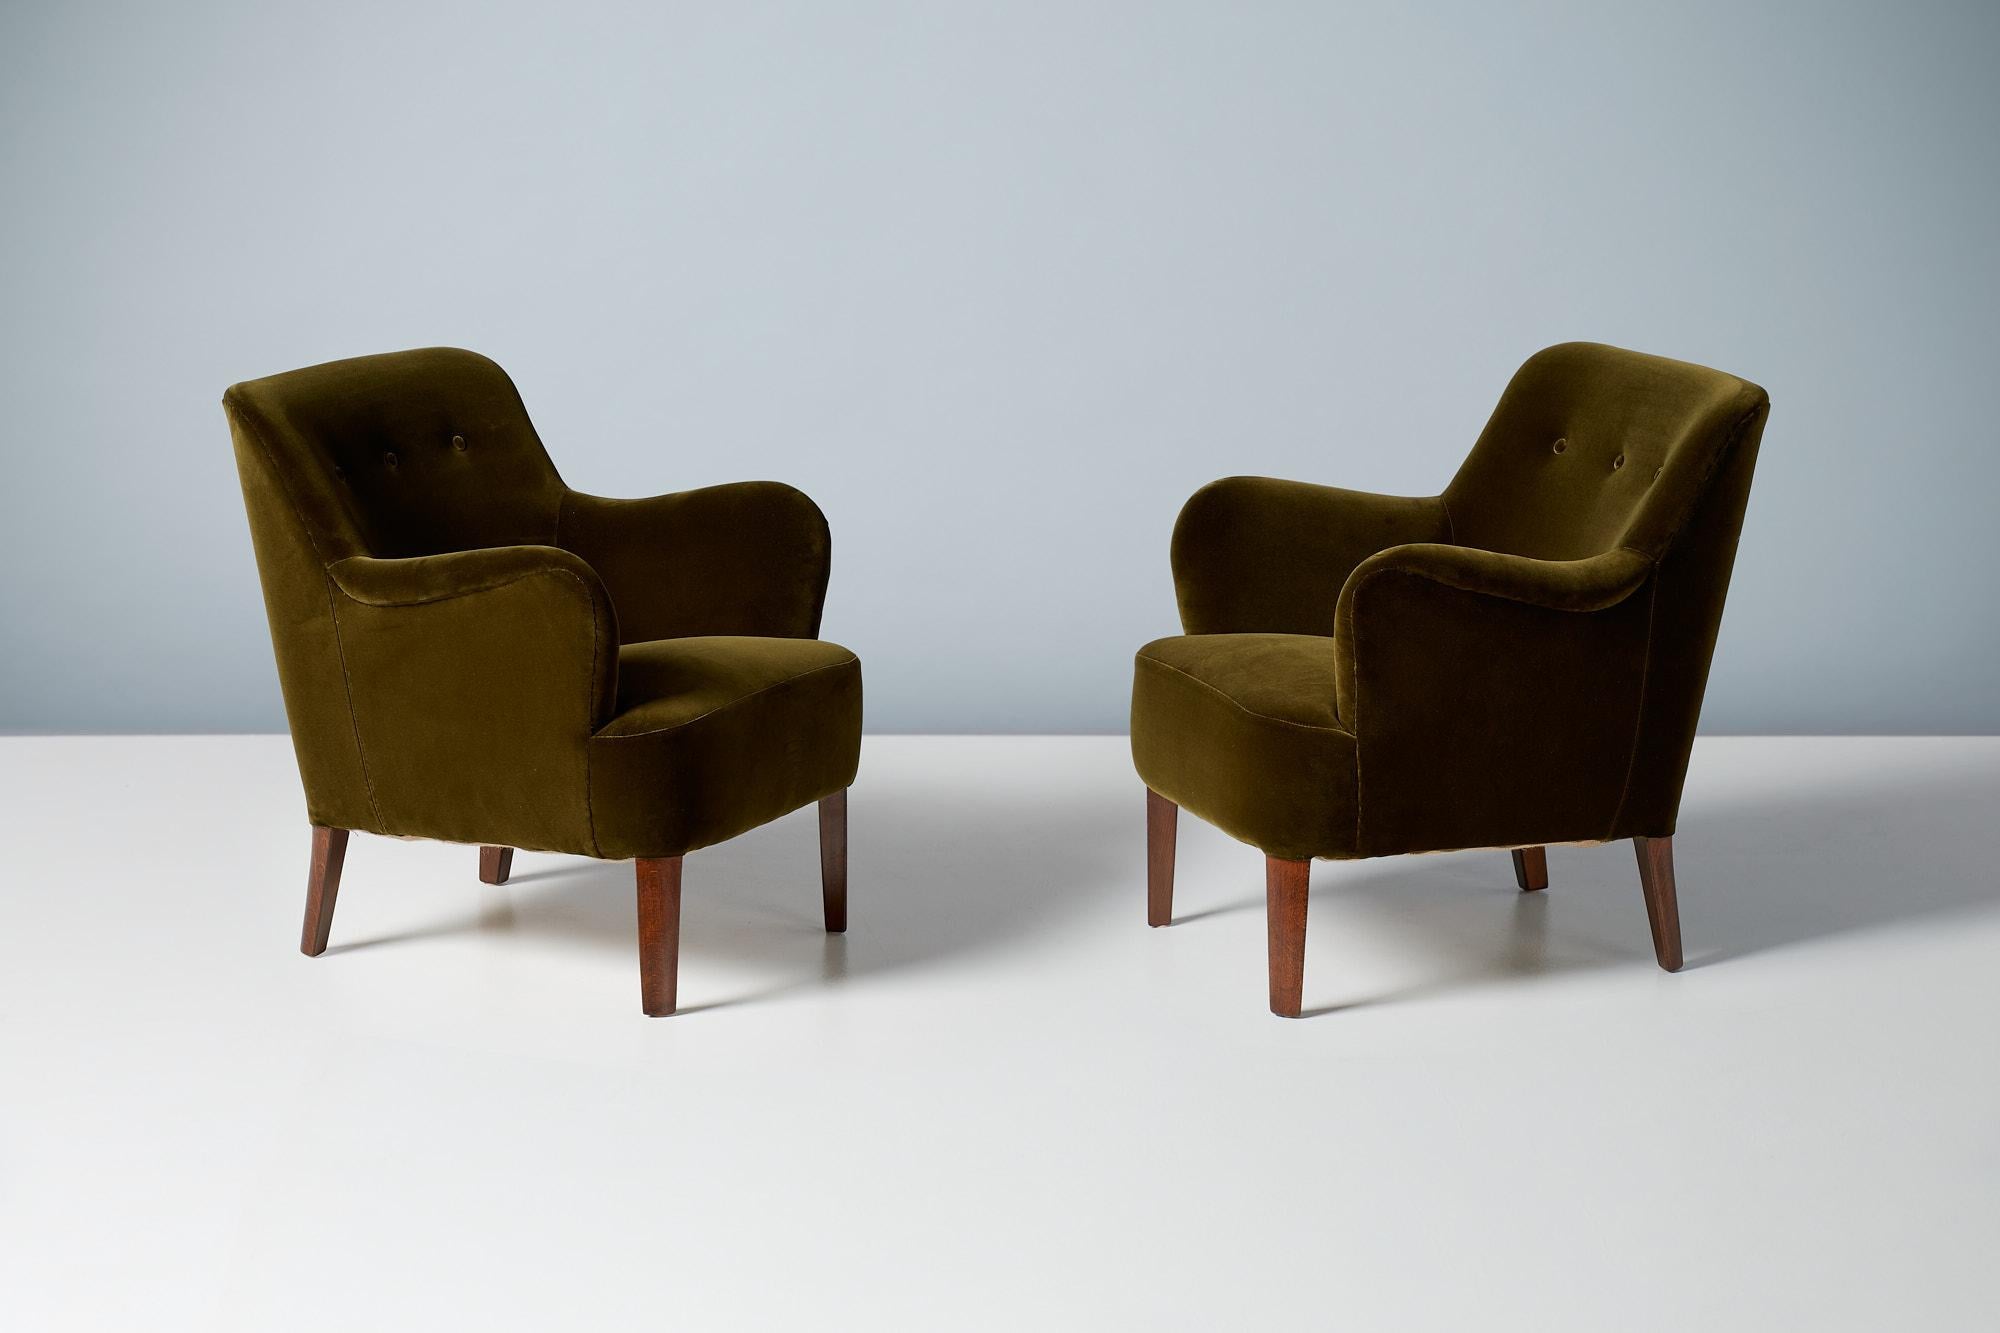 Peter Hvidt - Chaises longues modèle 1748, vers les années 1940.
Ces élégantes chaises longues à dossier bas ont été produites par Fritz Hansen au Danemark à la fin des années 1940 par le maître designer Peter Hvidt. Les pieds en hêtre ont été